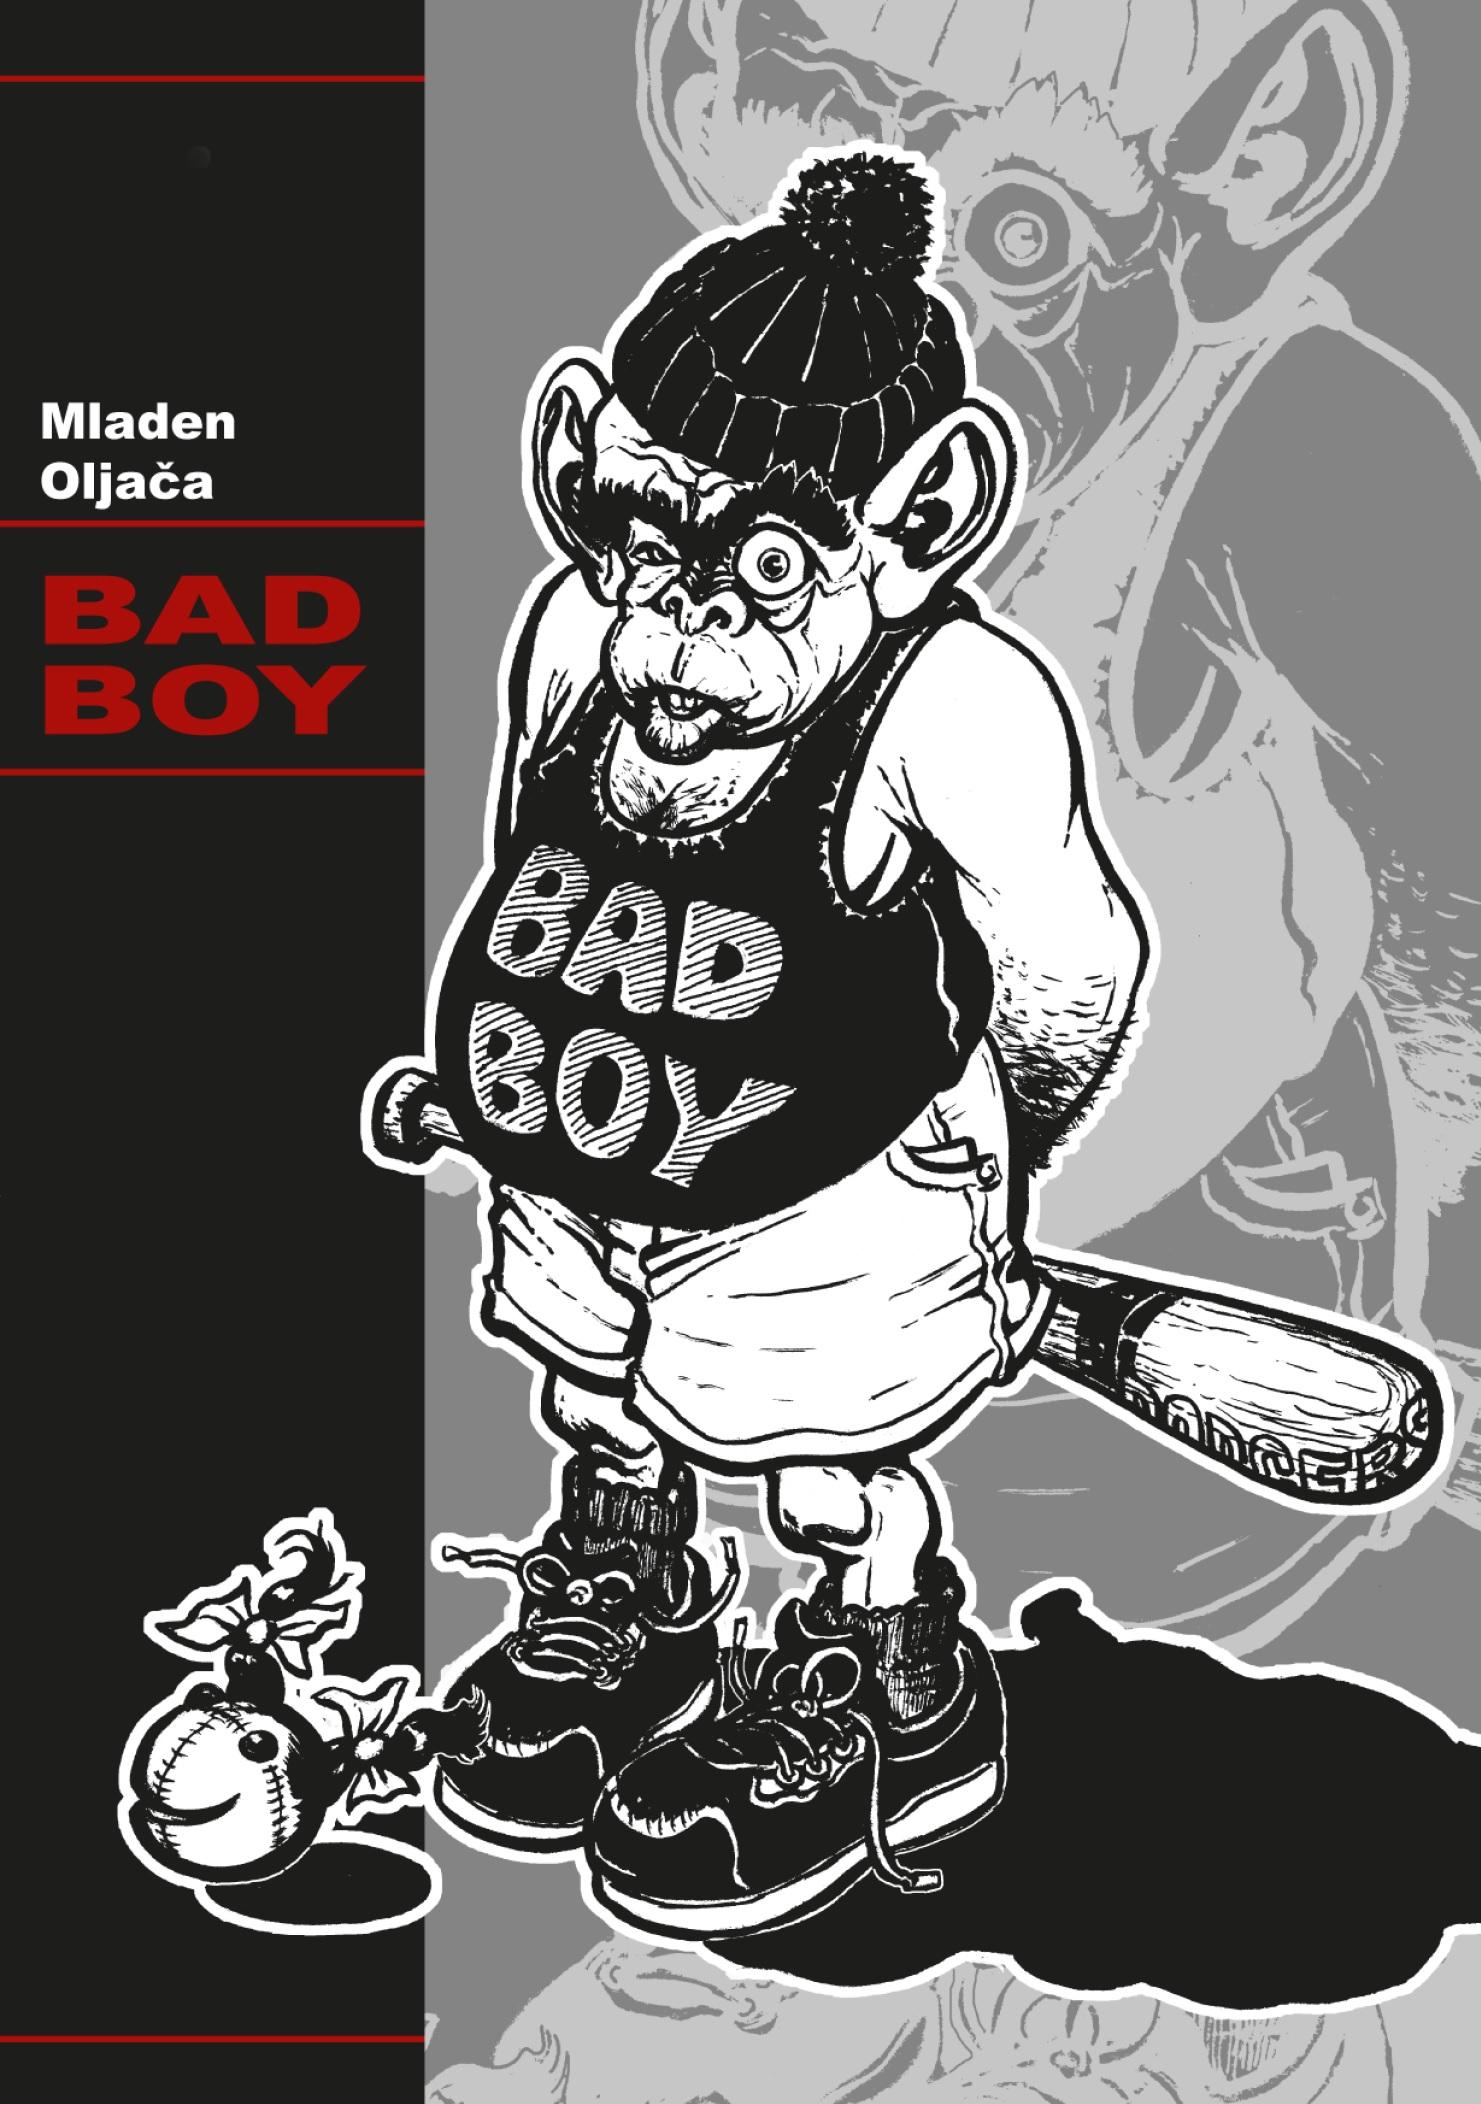 Bad boy